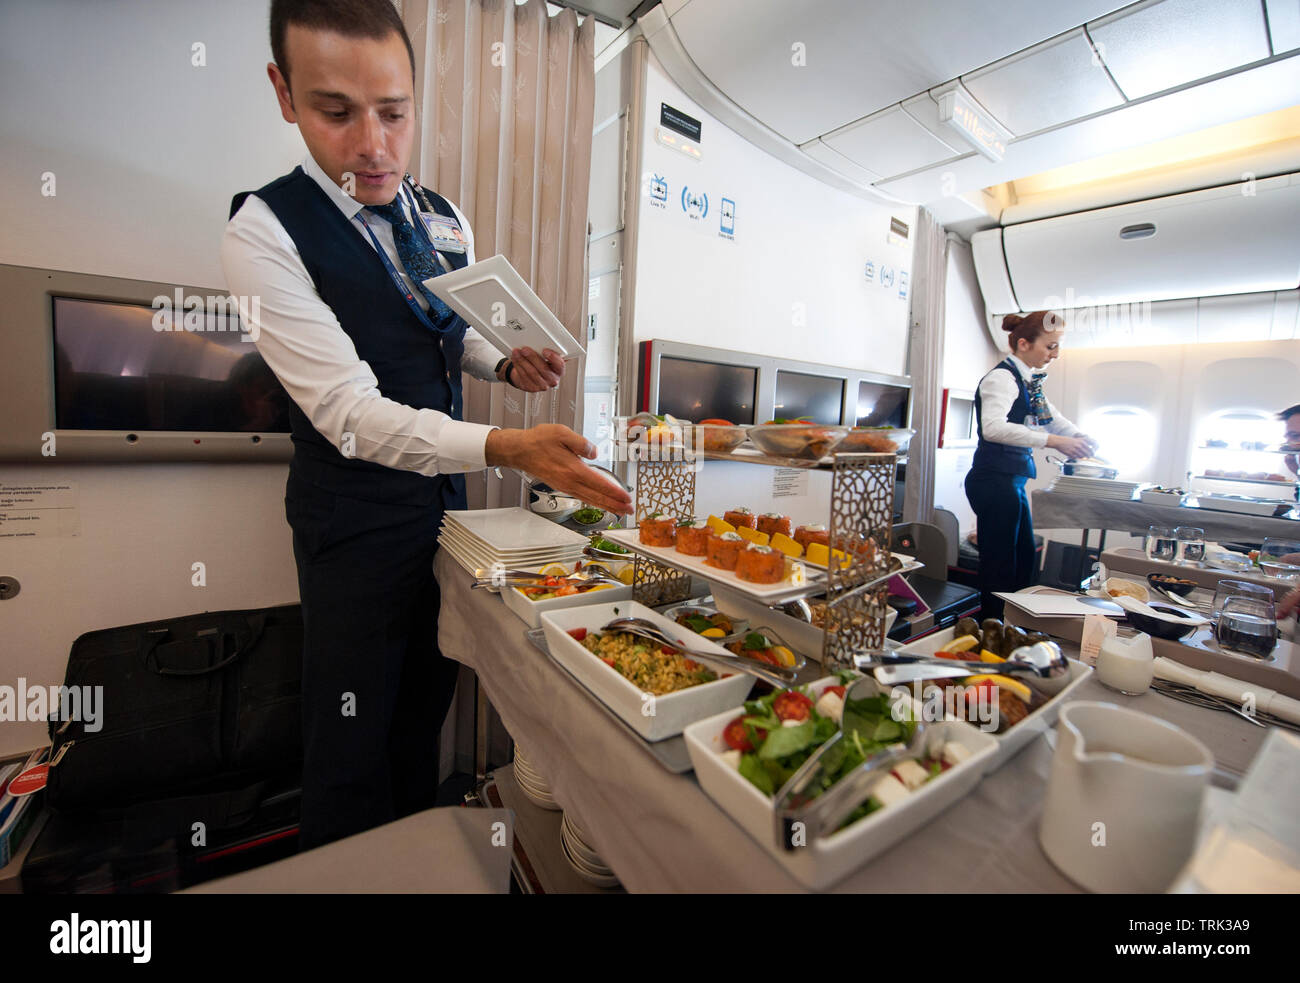 En Flight Crew sirviendo la cena gourmet en clase business sección de Turkish Airlines vuelo desde Estambul a Los Angeles, Foto de stock